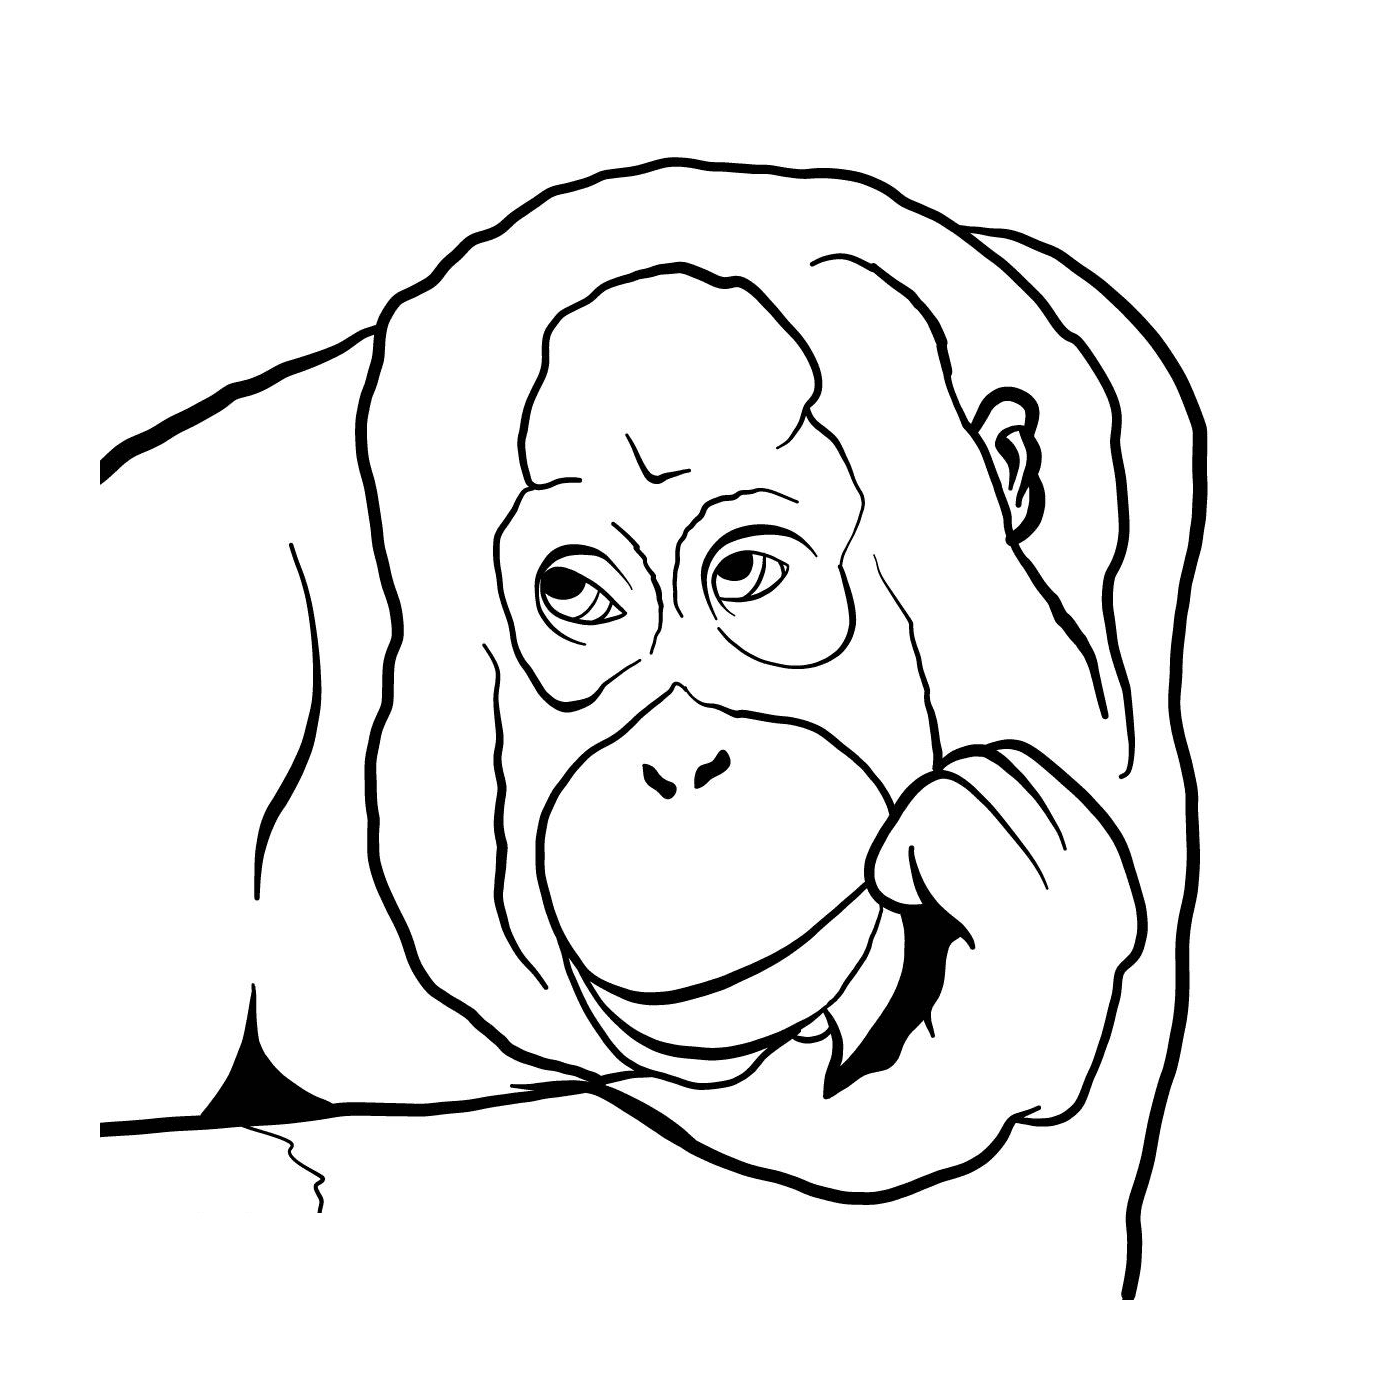  a gorilla 